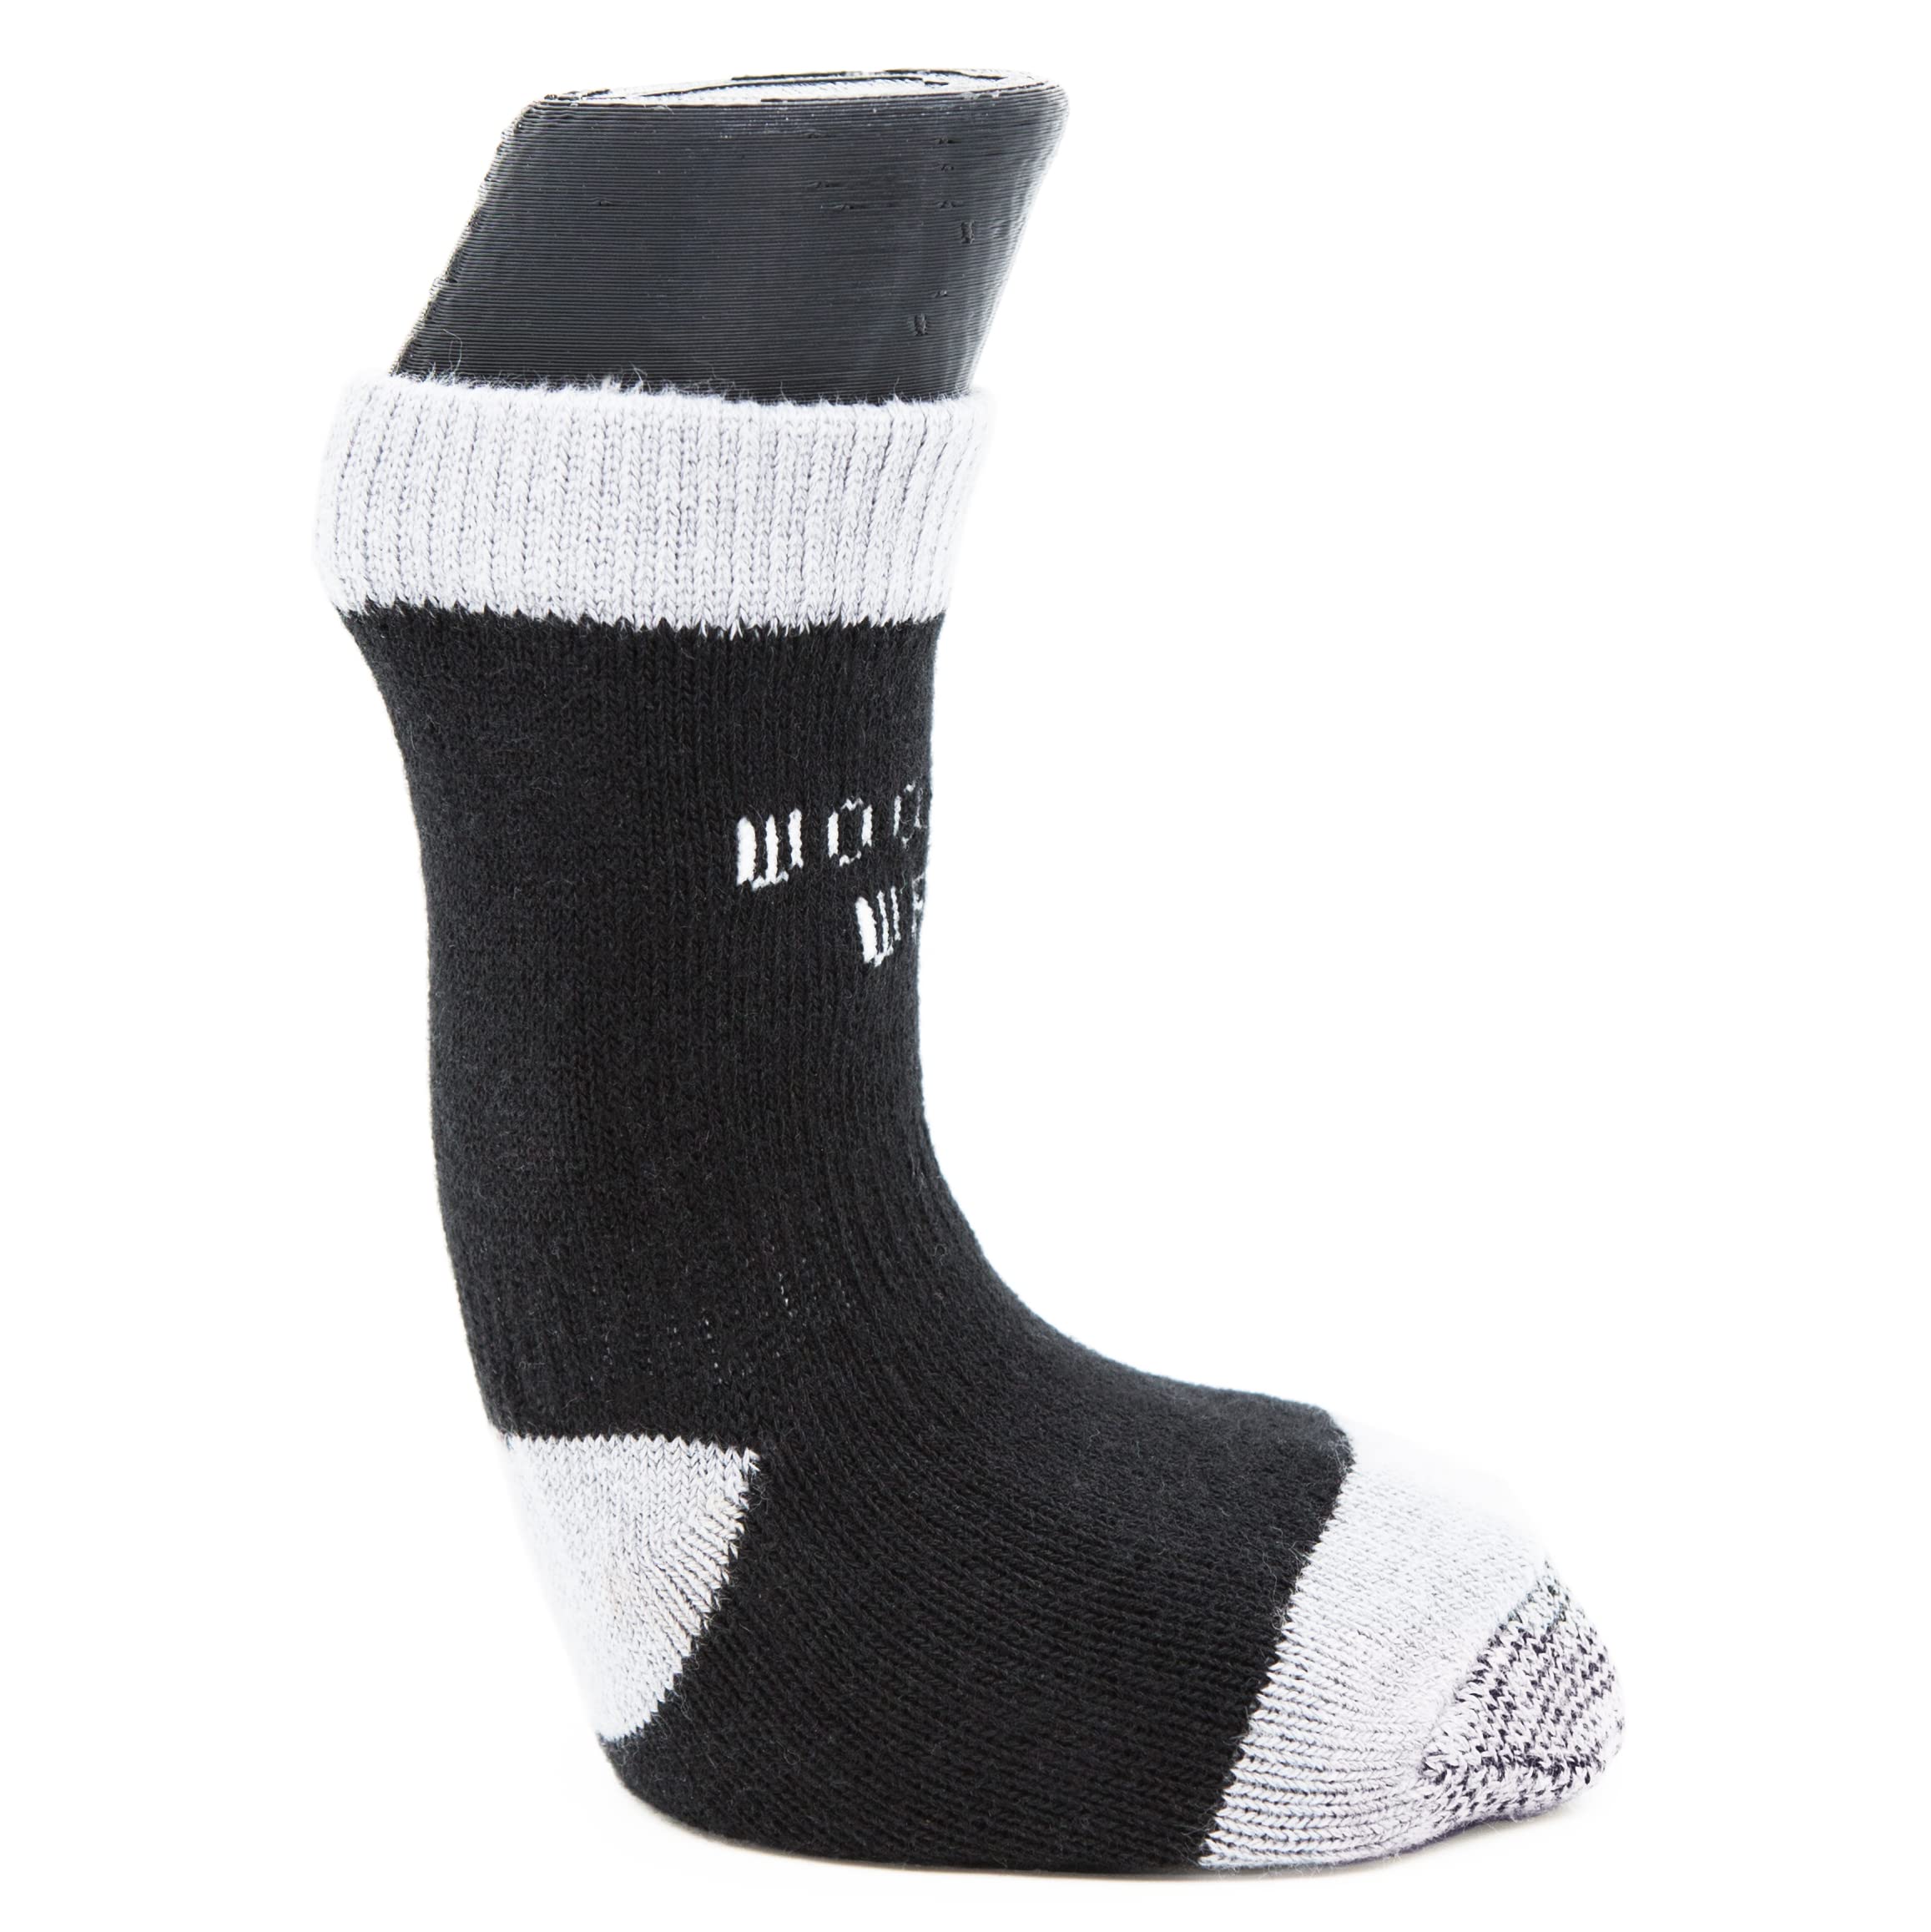 Woodrow Wear, Power Paws Advanced Dog Socks, Black Grey  - Like New